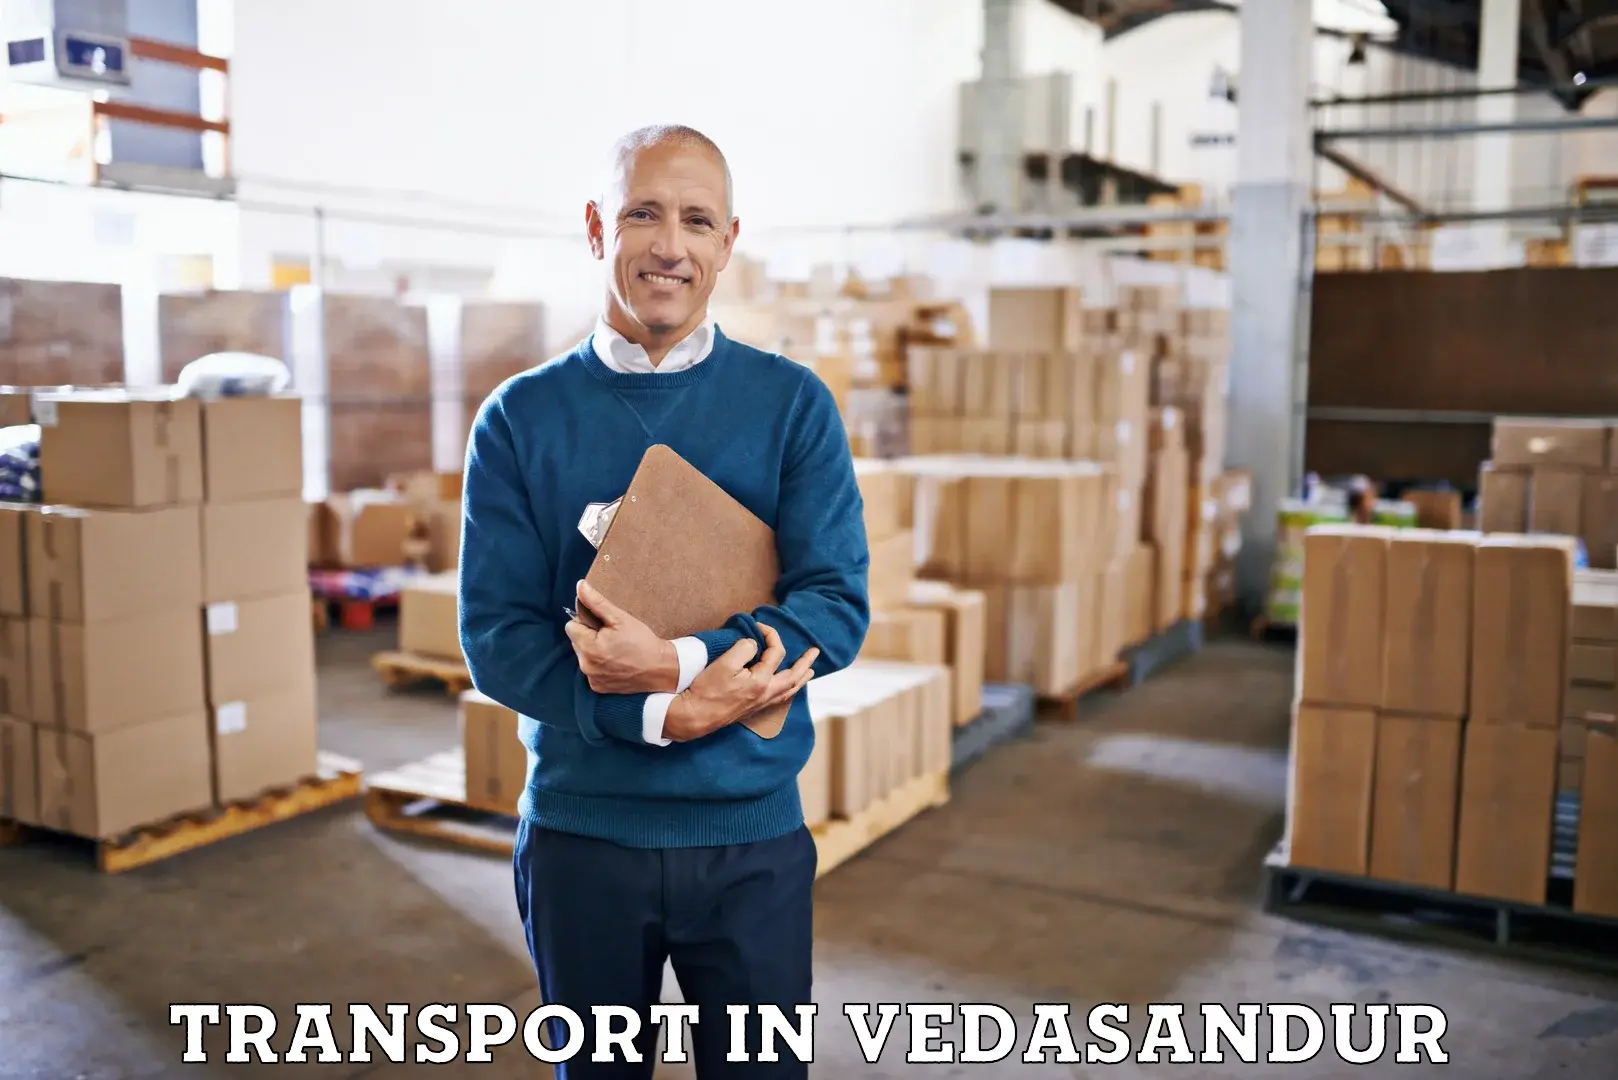 Goods transport services in Vedasandur